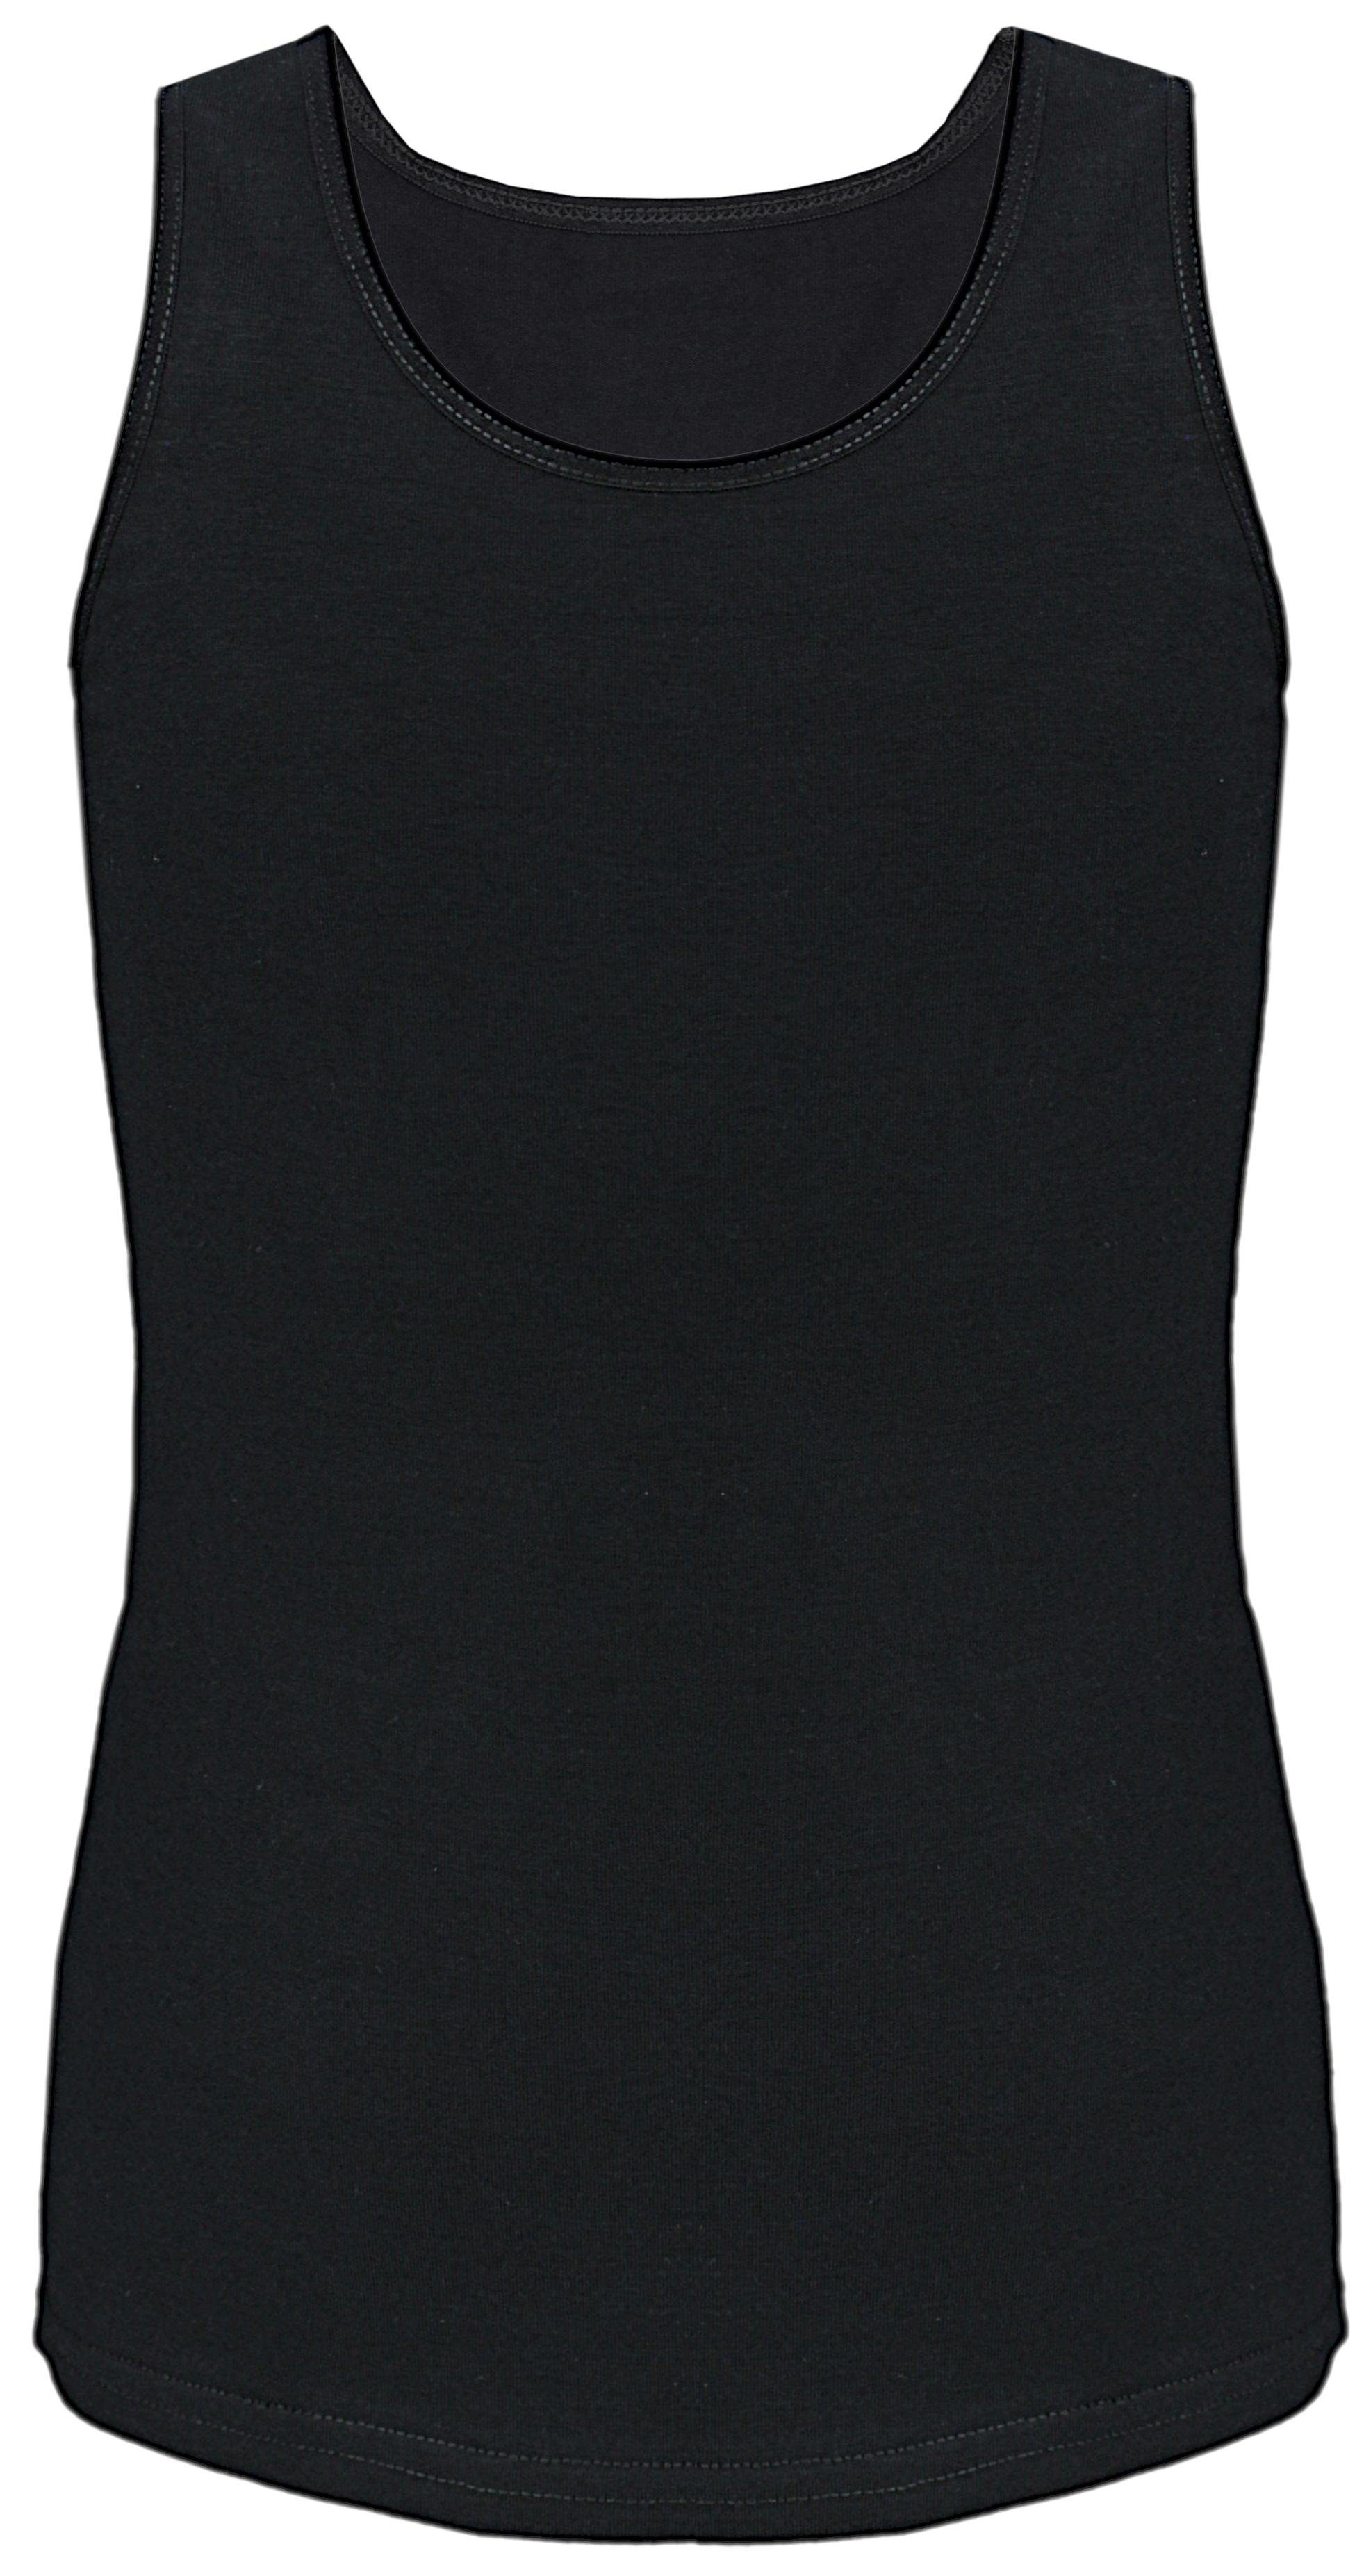 TupTam Tank TupTam Baumwolle Unterhemd Top 5er Ärmellos Kinder Mädchen Unterhemd Pack Schwarz